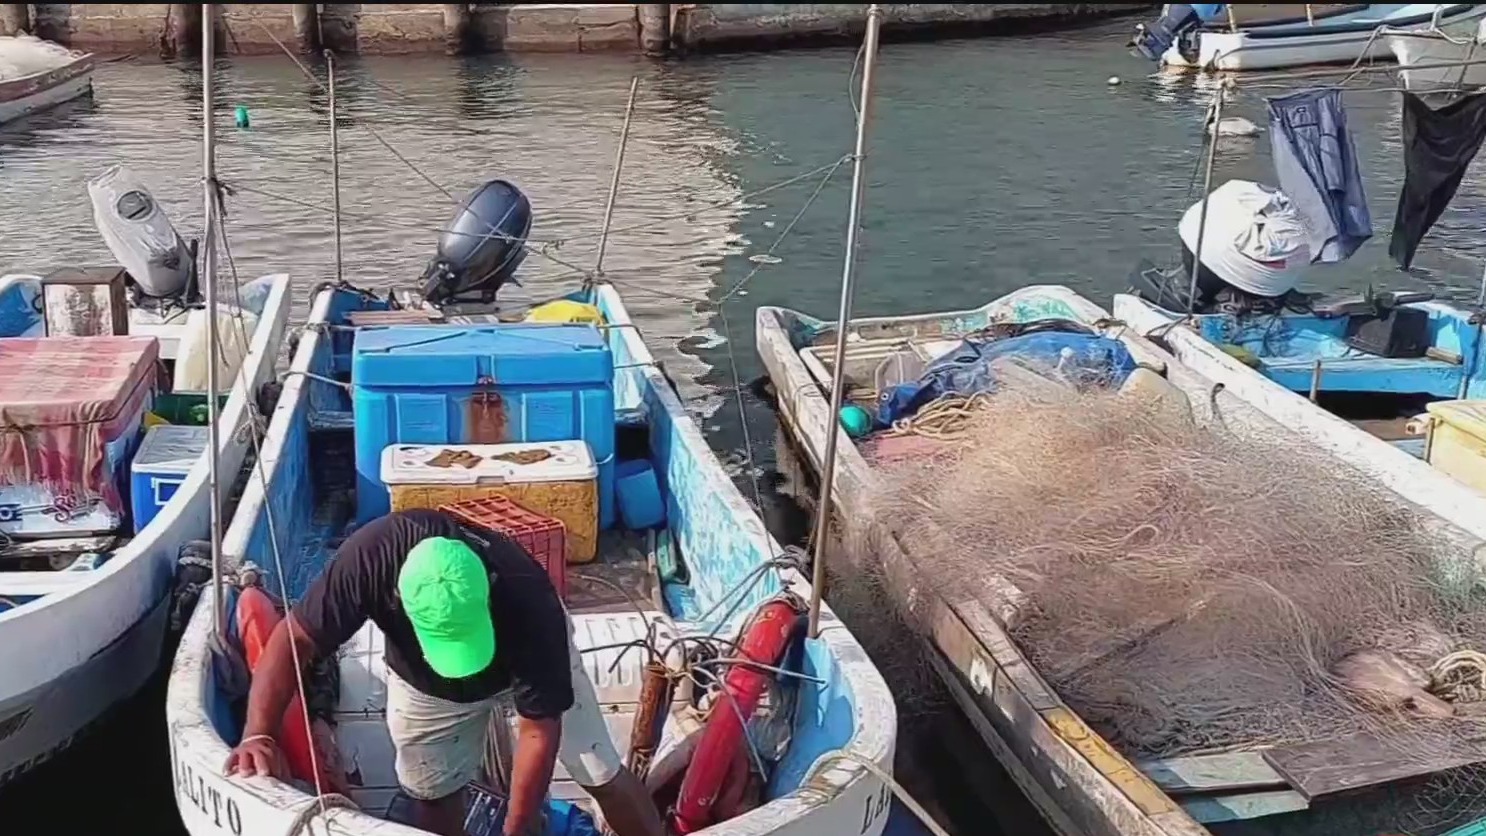 cuaresma beneficia a comerciantes de pescados y mariscos en veracruz